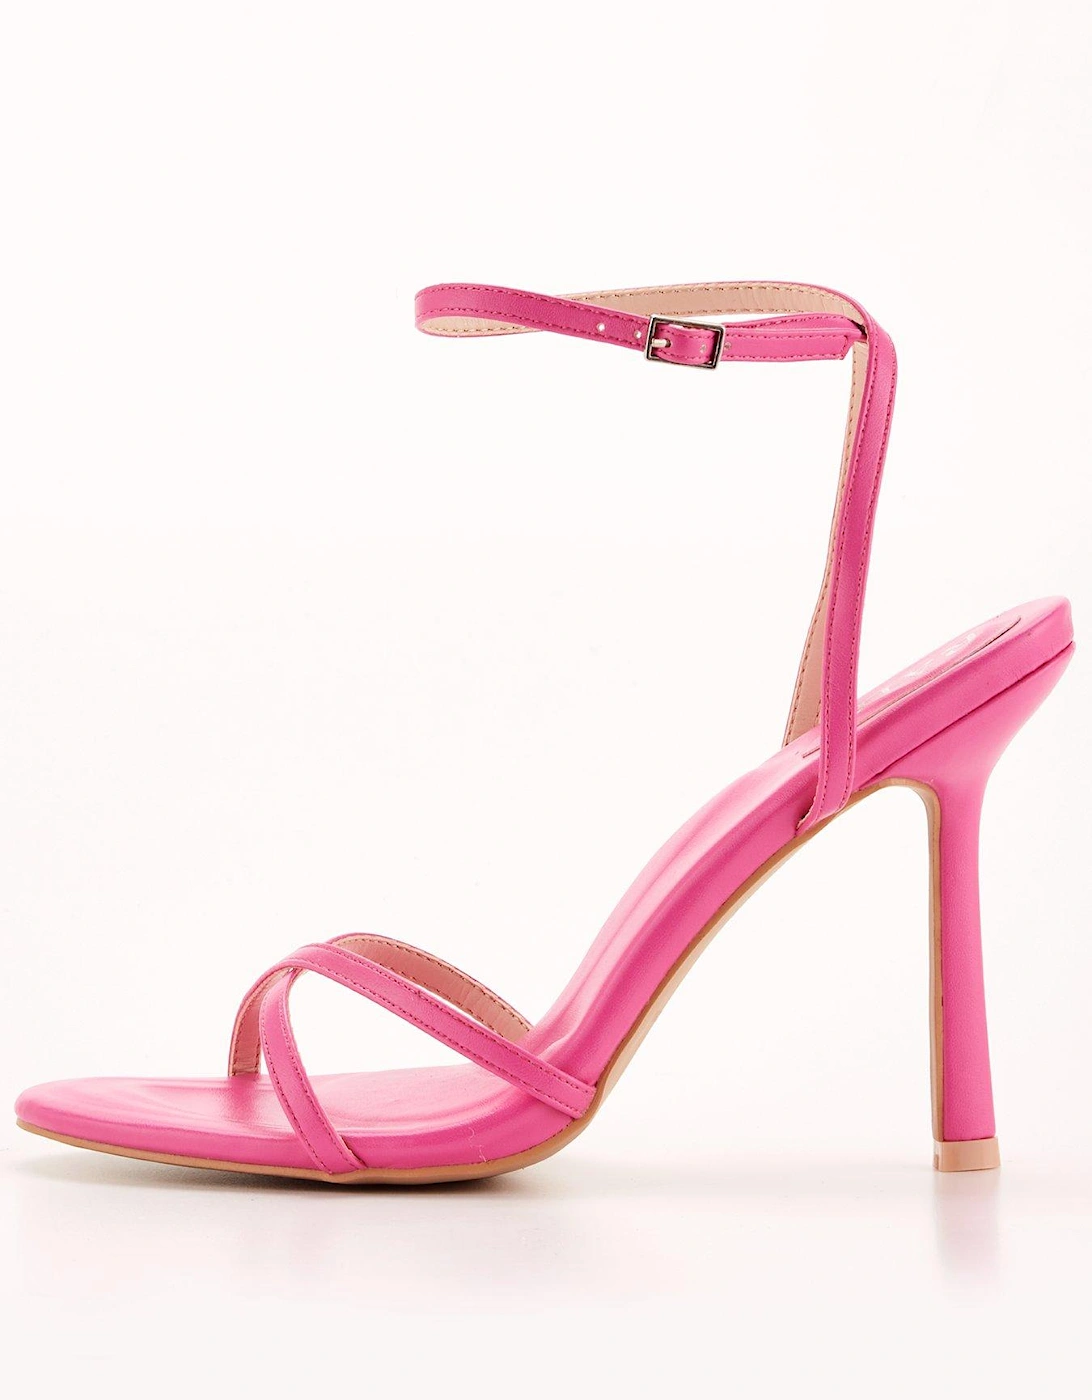 Sevilla Ankle Strap Heeled Sandal - Hot Pink, 2 of 1